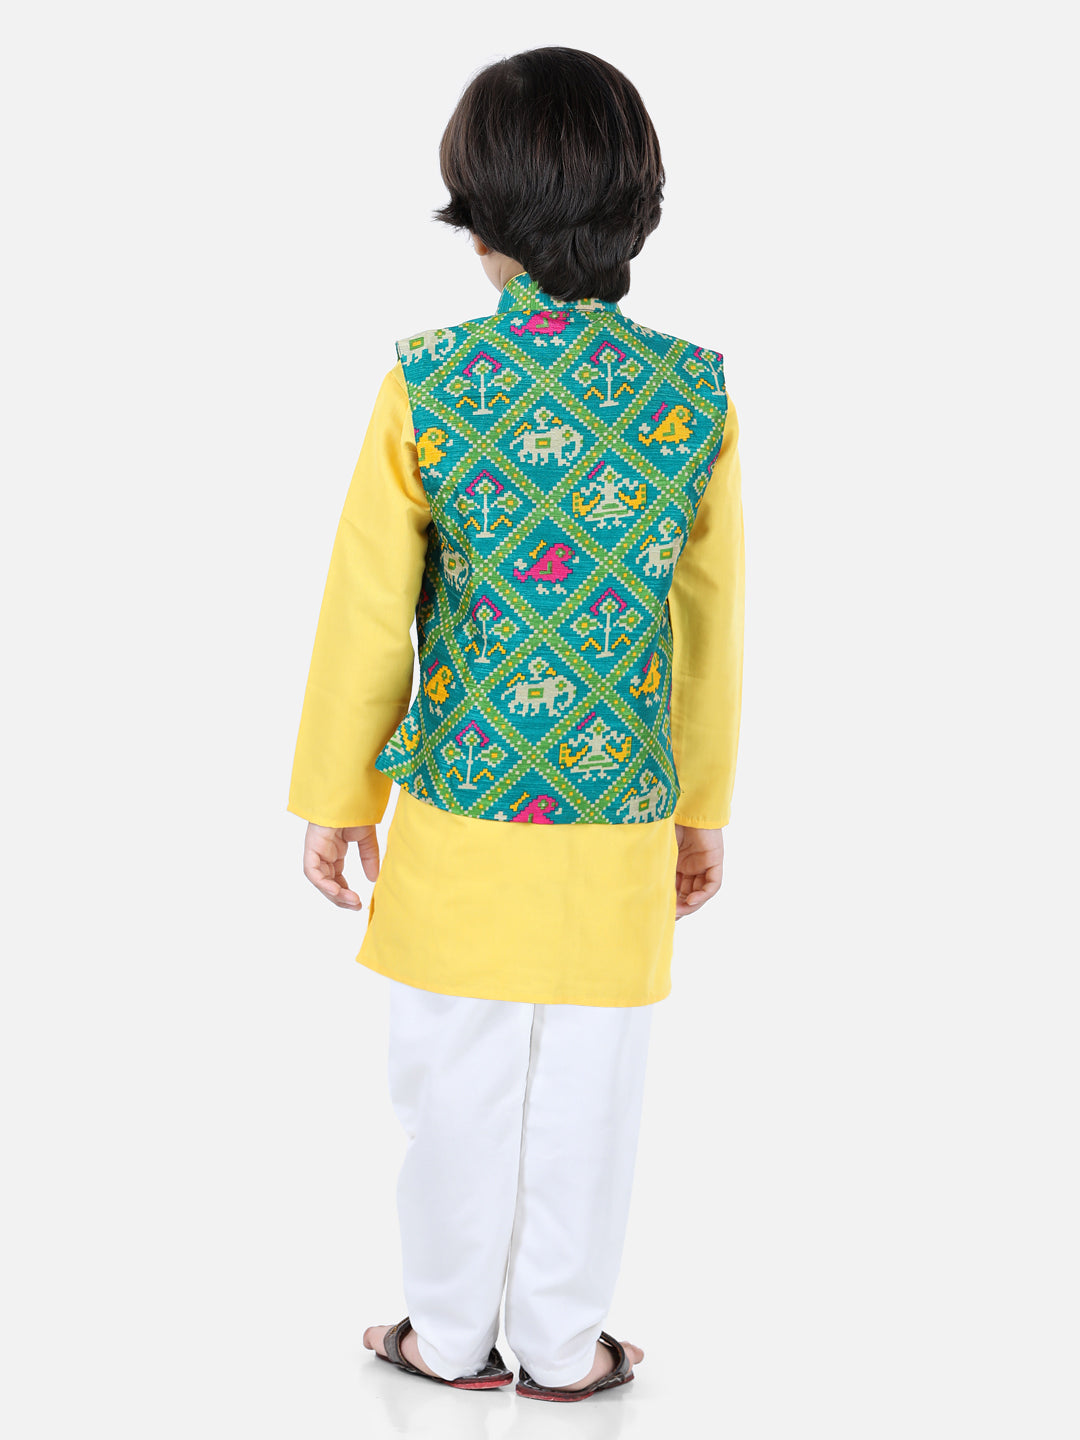 BownBee Patan Patola Jacket With Full Sleeves Kurta Pajama Sets- Yellow